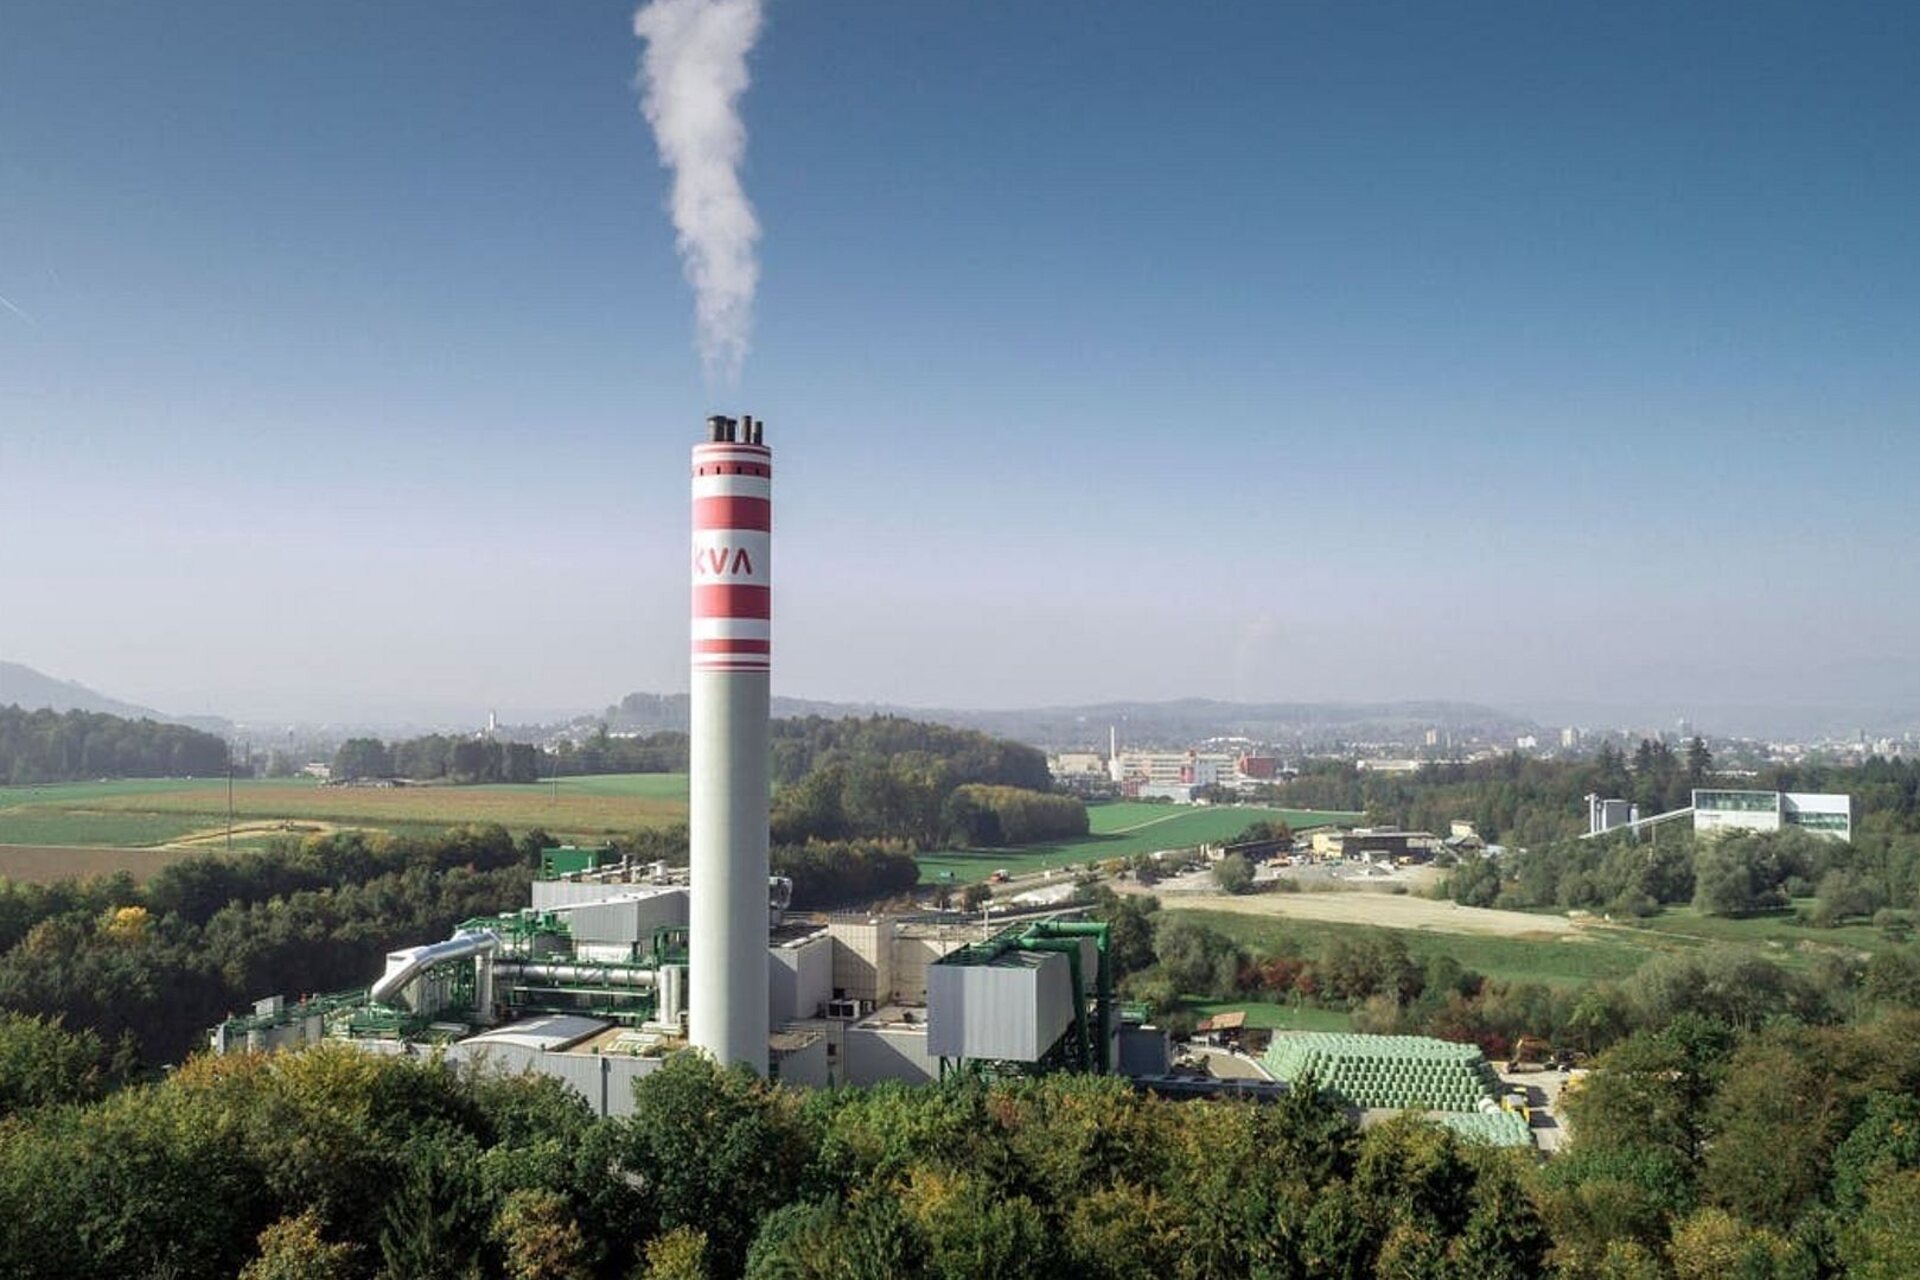 Sakupljanje i skladištenje ugljenika: CCS u budućnosti Švajcarske